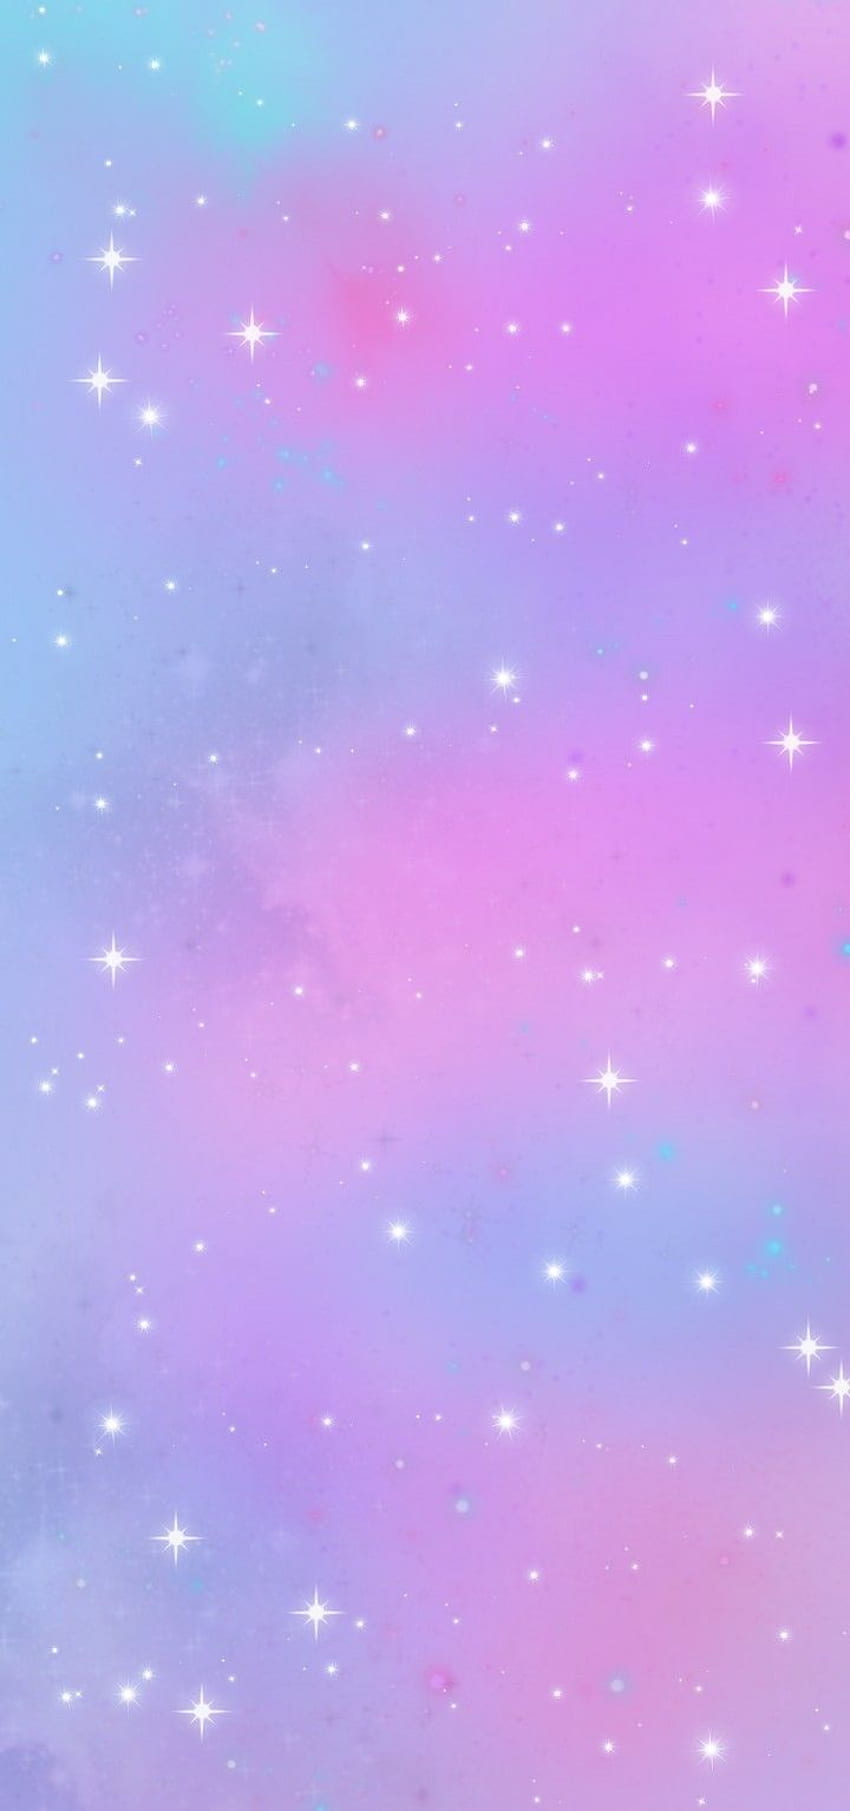 Thả mình vào không gian tuyệt diệu của thiên hà hồng tím với hình nền đẹp như cổ tích này. Bao quanh bởi những ngôi sao và màu sắc lung linh, hình ảnh sẽ khiến bạn cảm thấy như đang sống trong một giấc mơ tuyệt vời.